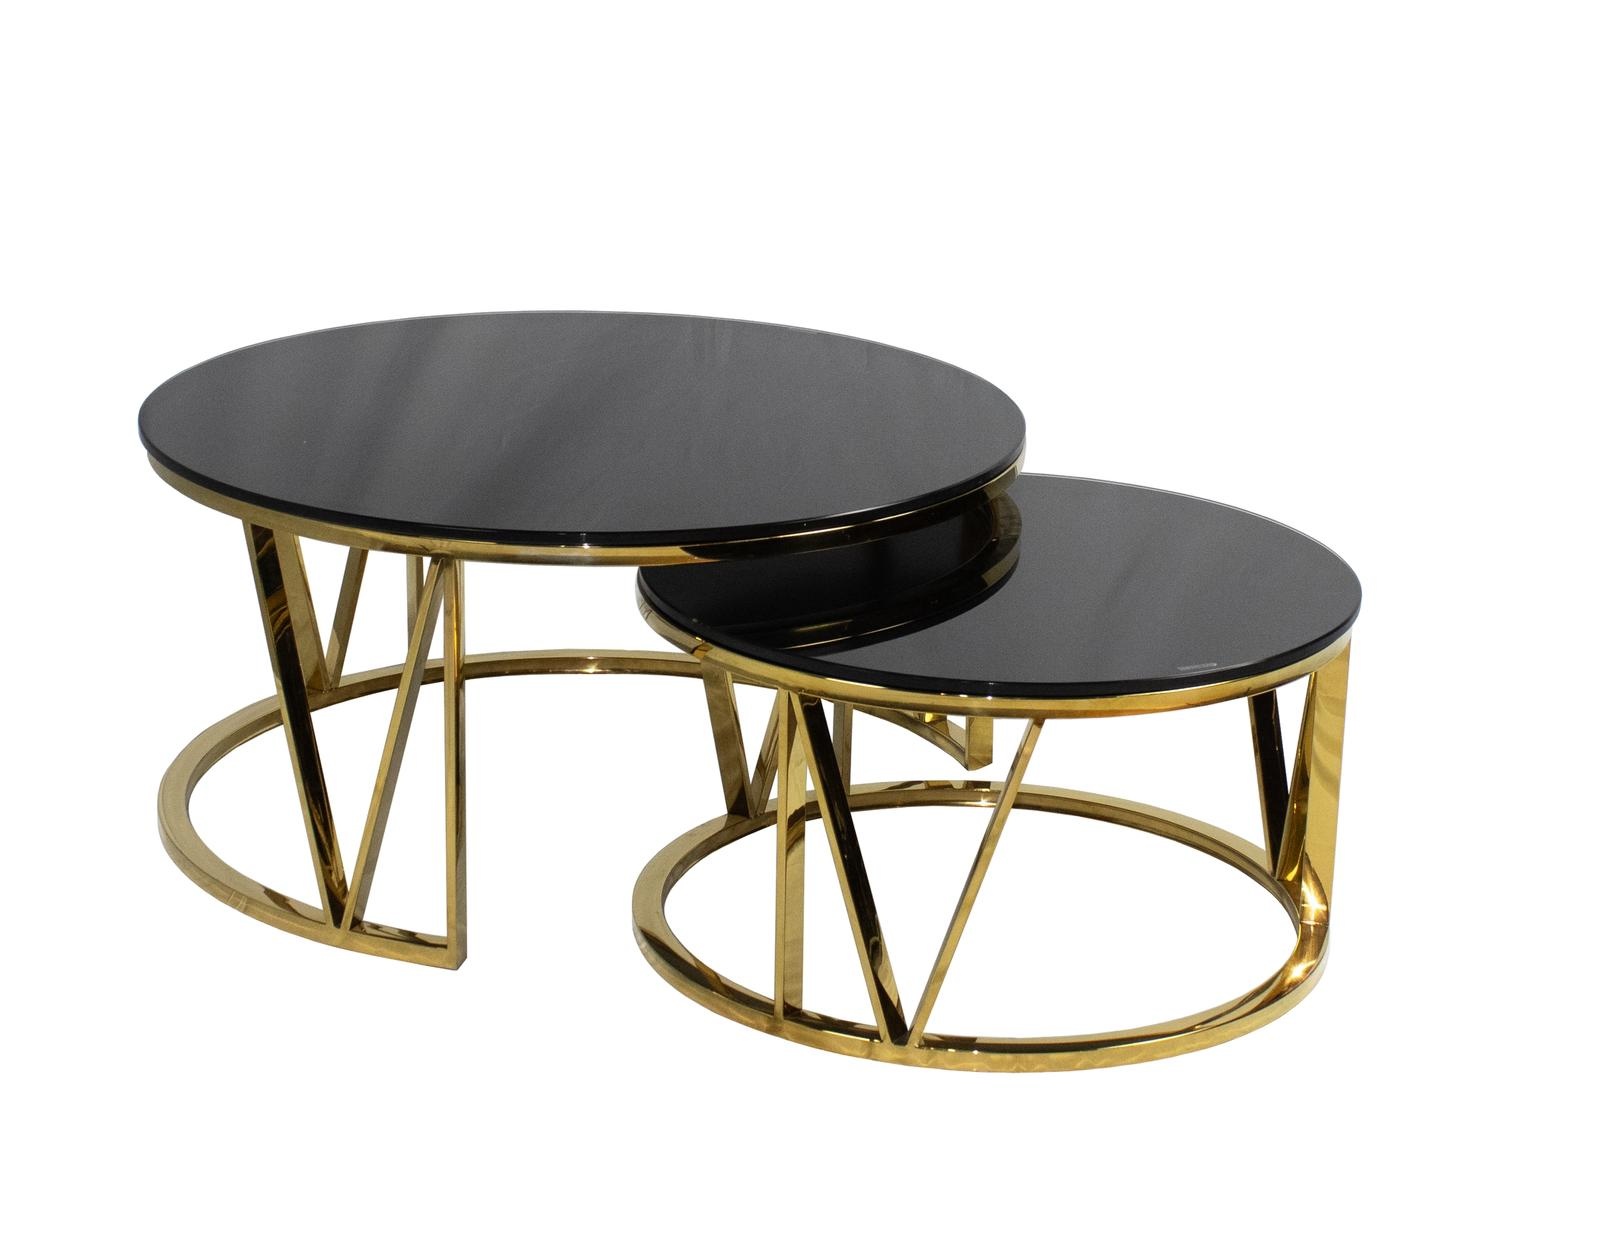 Beschikbaar intelligentie Worden Dubbele salontafel goud met zwart glas - parky salontafels - Bazaaronline